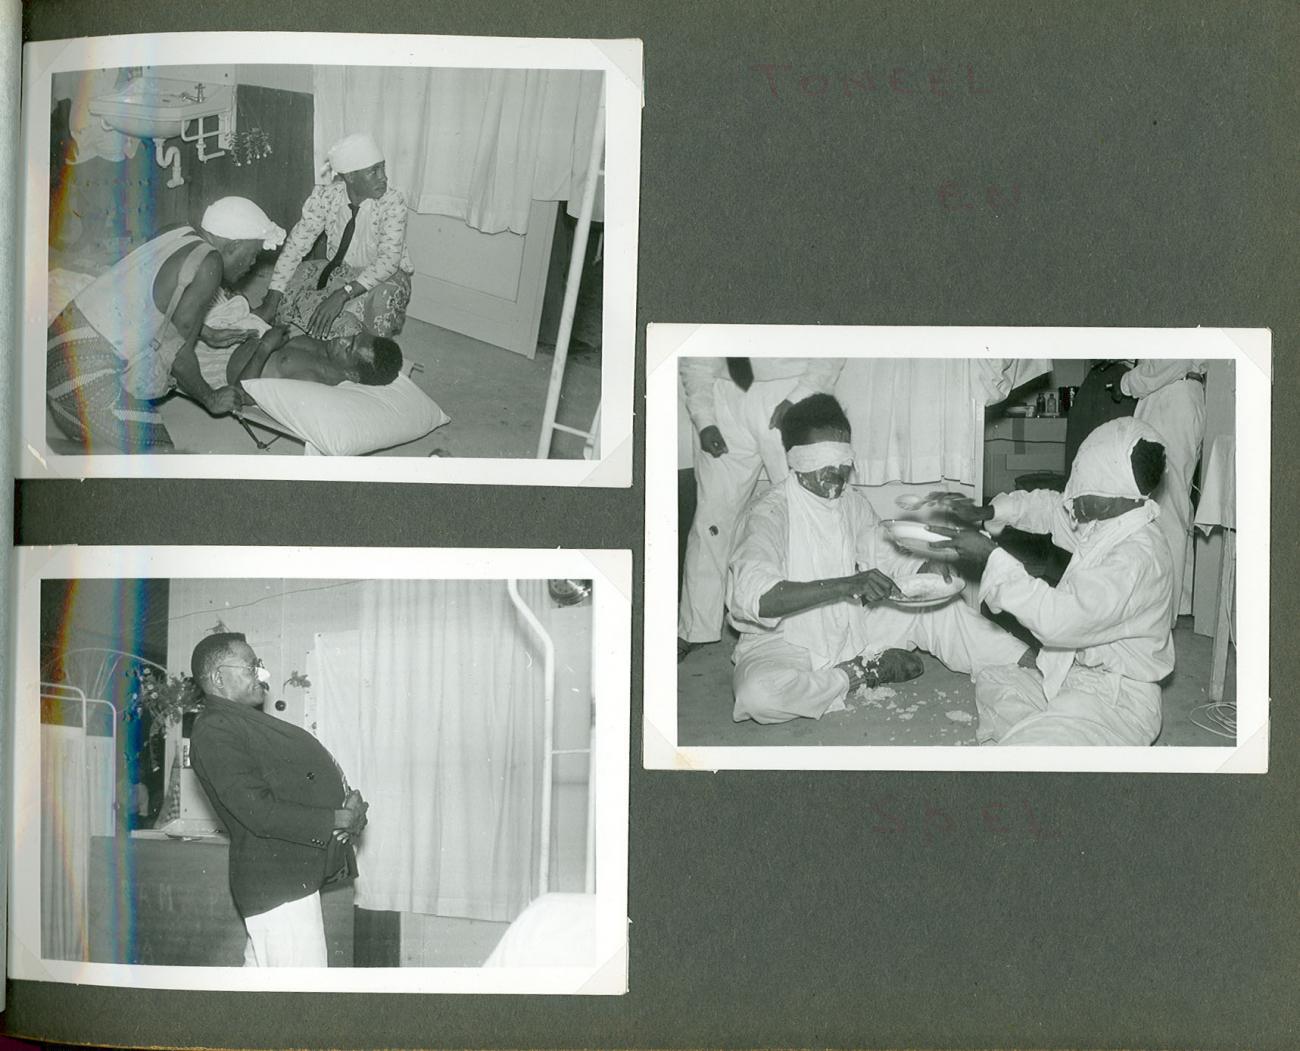 BD/83/115 - 
Afscheidsfeest verpleegster Jannie Kraaima
